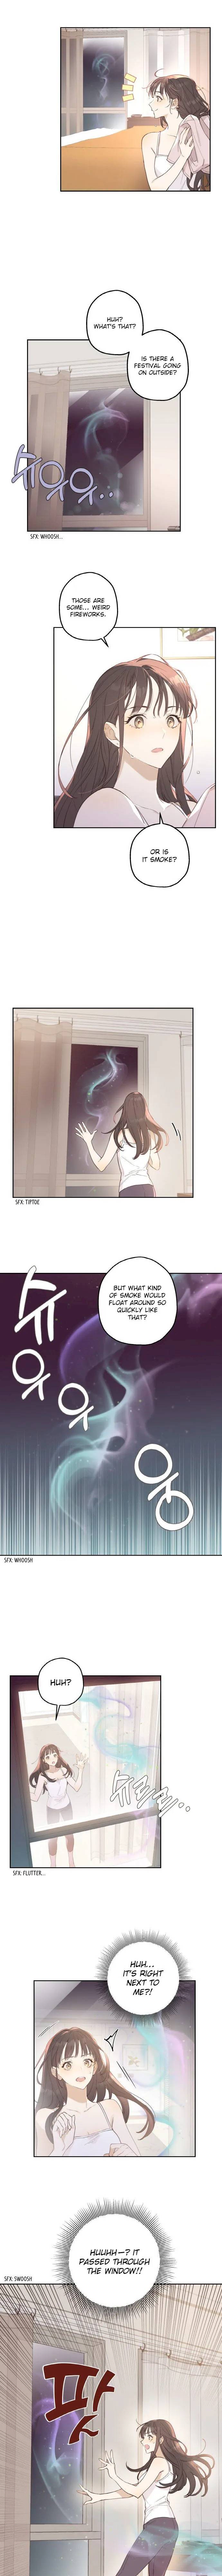 Onsaemiro - Chapter 1 Page 10